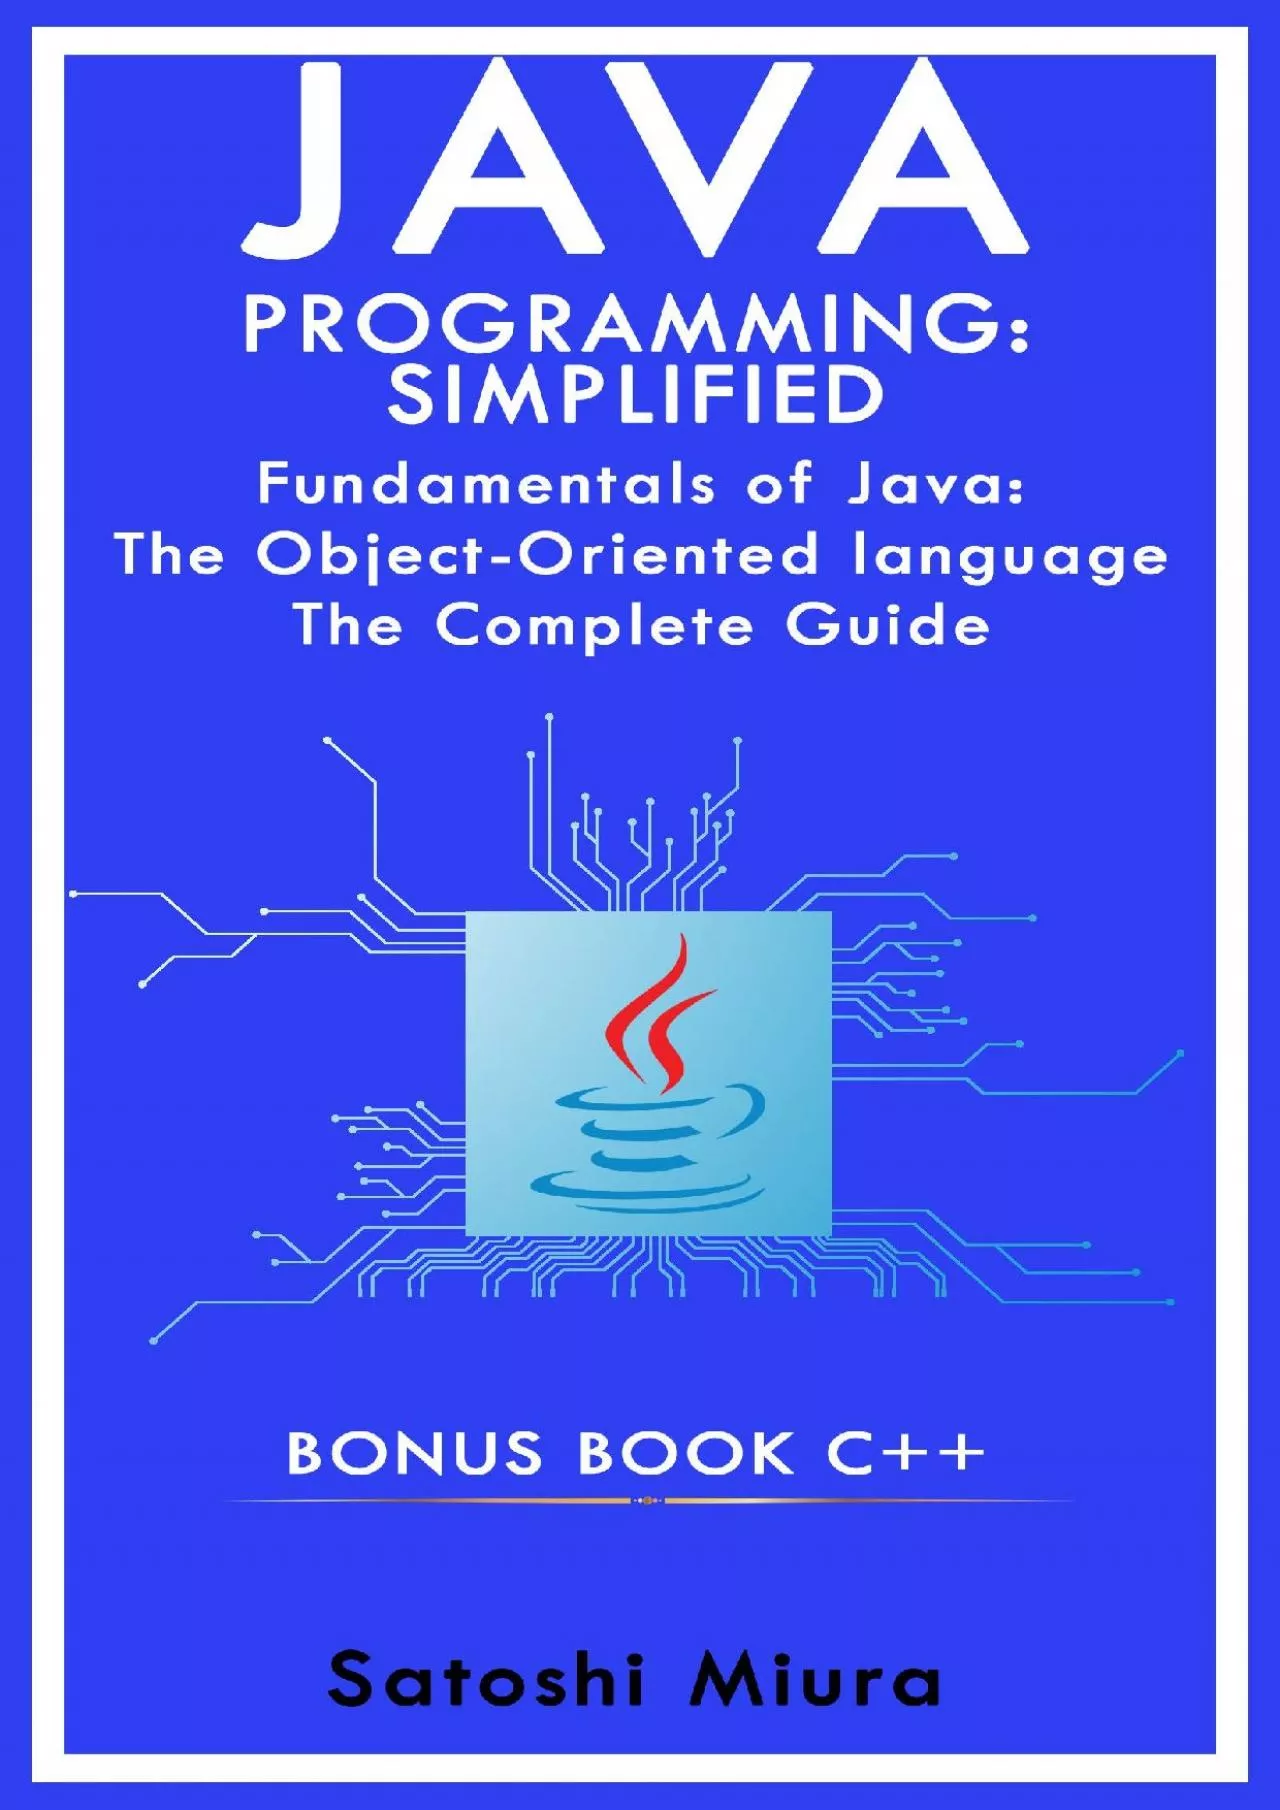 [DOWLOAD]-Java Programming Simplified - C++: Fundamentals of Java: An Obj??t-?r??nt?d